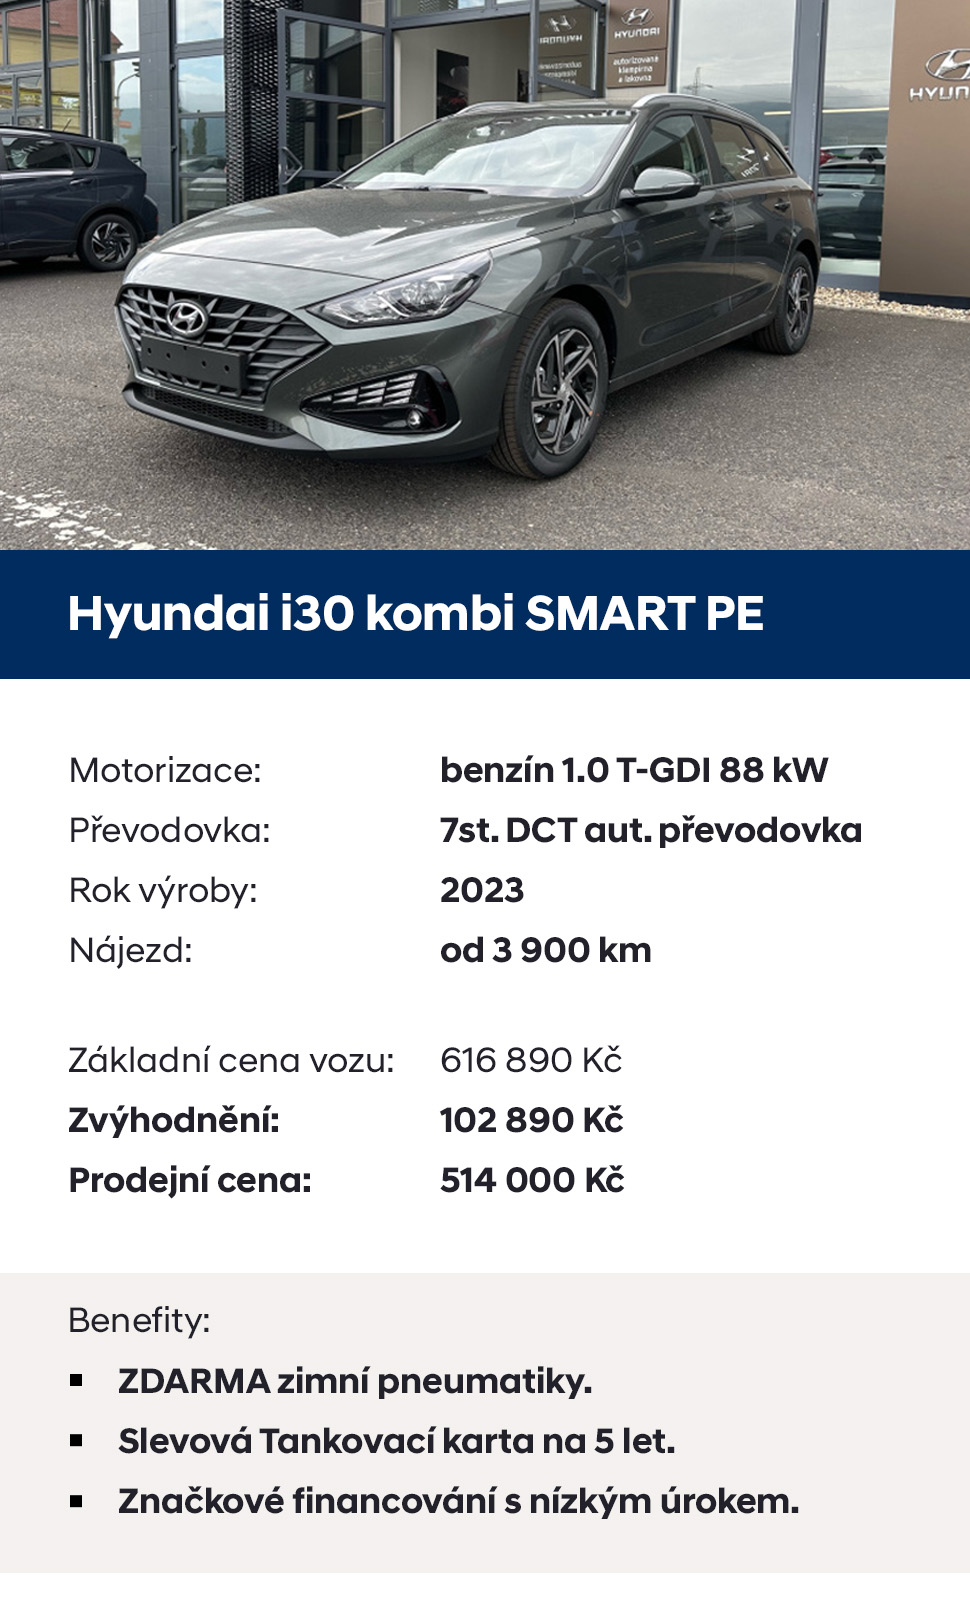 Akční nabídka Hyundai